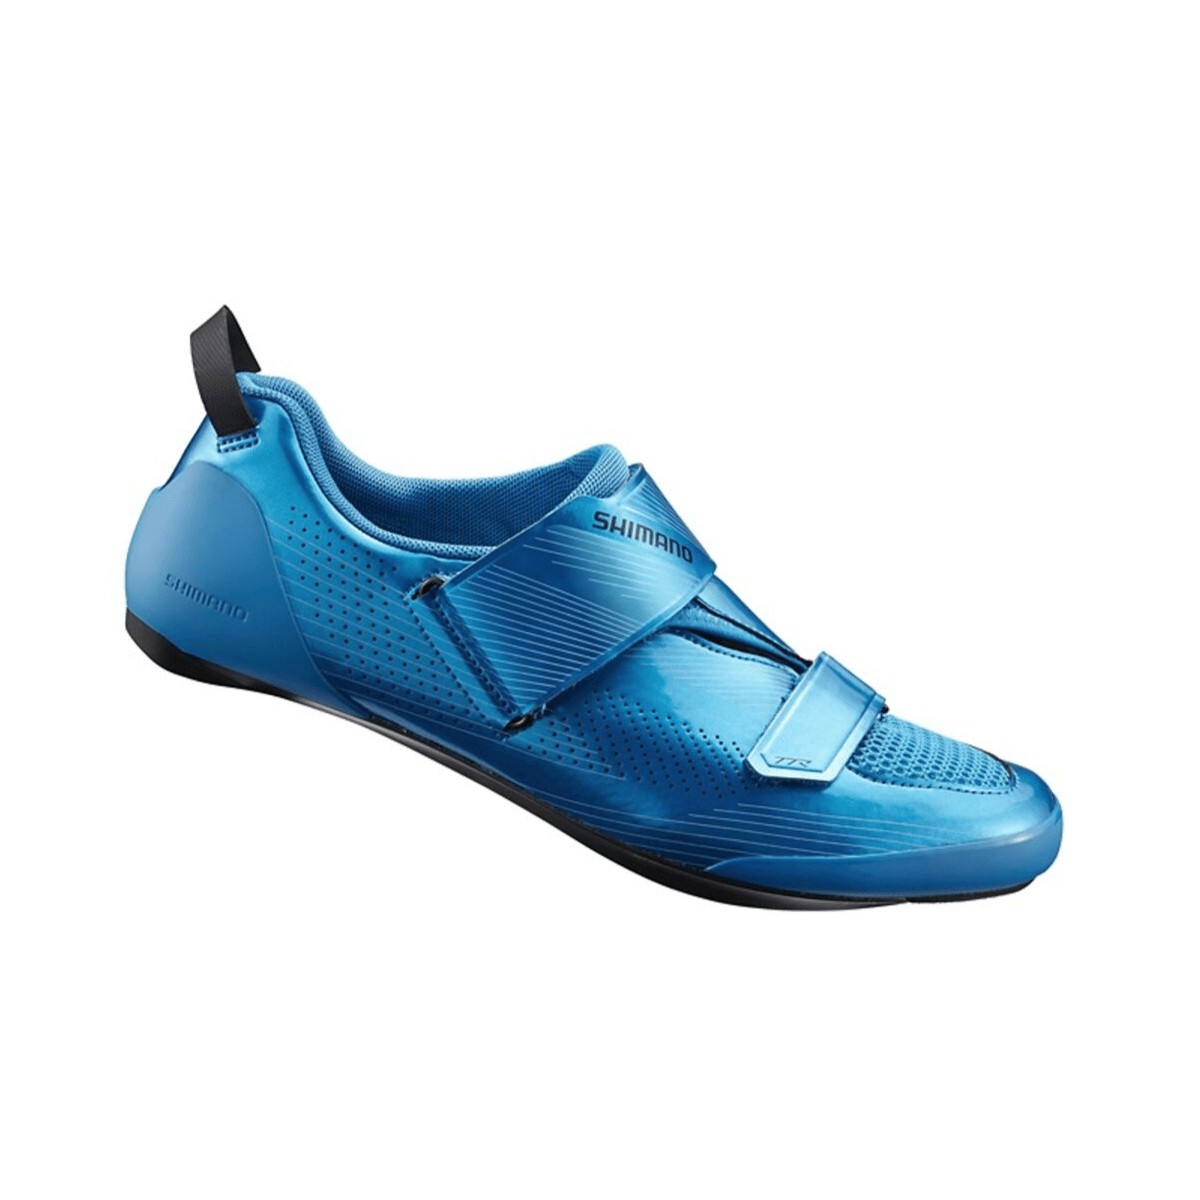 46 EUR günstig Kaufen-Shimano TR9 Triathlonschuhe blau, Größe 46 - EUR. Shimano TR9 Triathlonschuhe blau, Größe 46 - EUR . 